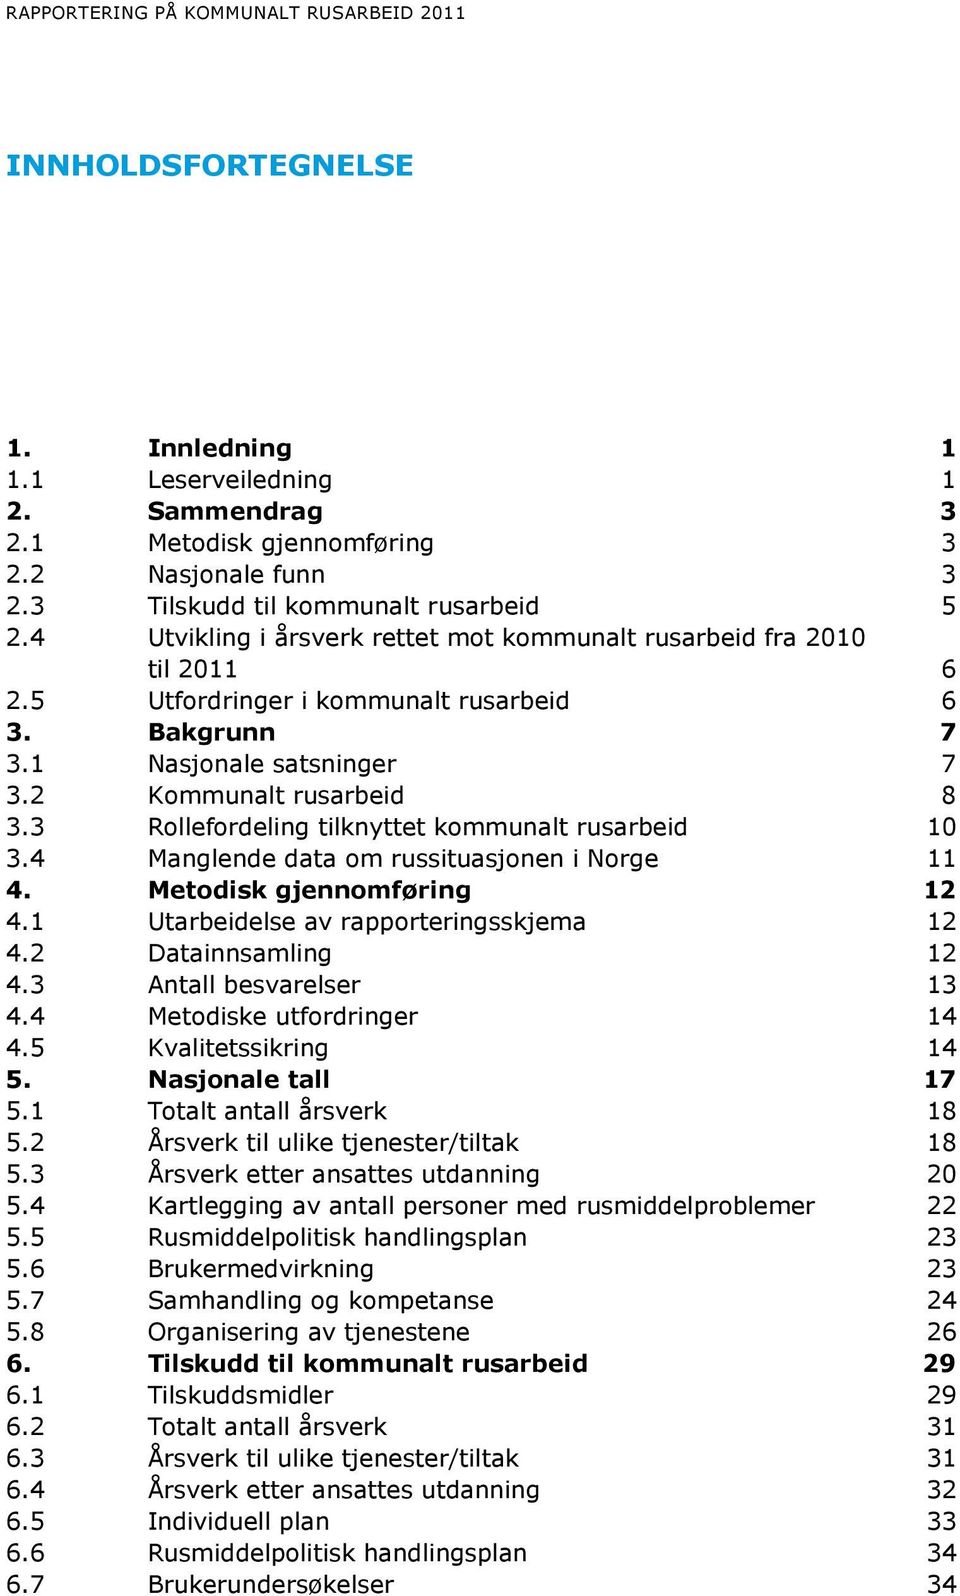 2 Kommunalt rusarbeid 8 3.3 Rollefordeling tilknyttet kommunalt rusarbeid 10 3.4 Manglende data om russituasjonen i Norge 11 4. Metodisk gjennomføring 12 4.1 Utarbeidelse av rapporteringsskjema 12 4.